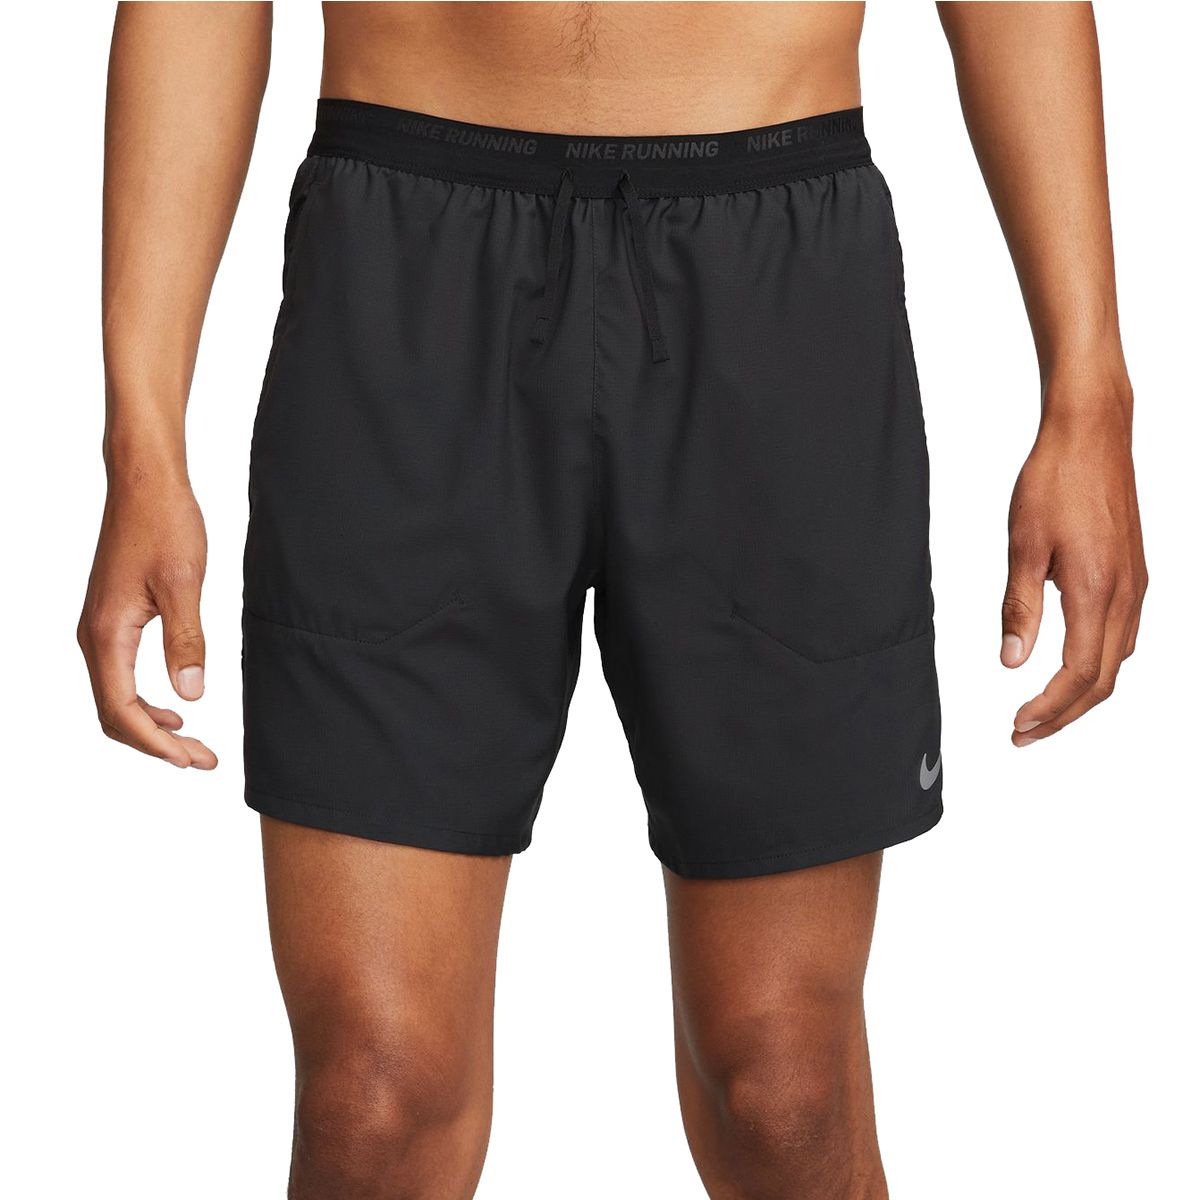 Nike Stride 2-in-1 Men's Running Shorts DM4759-010